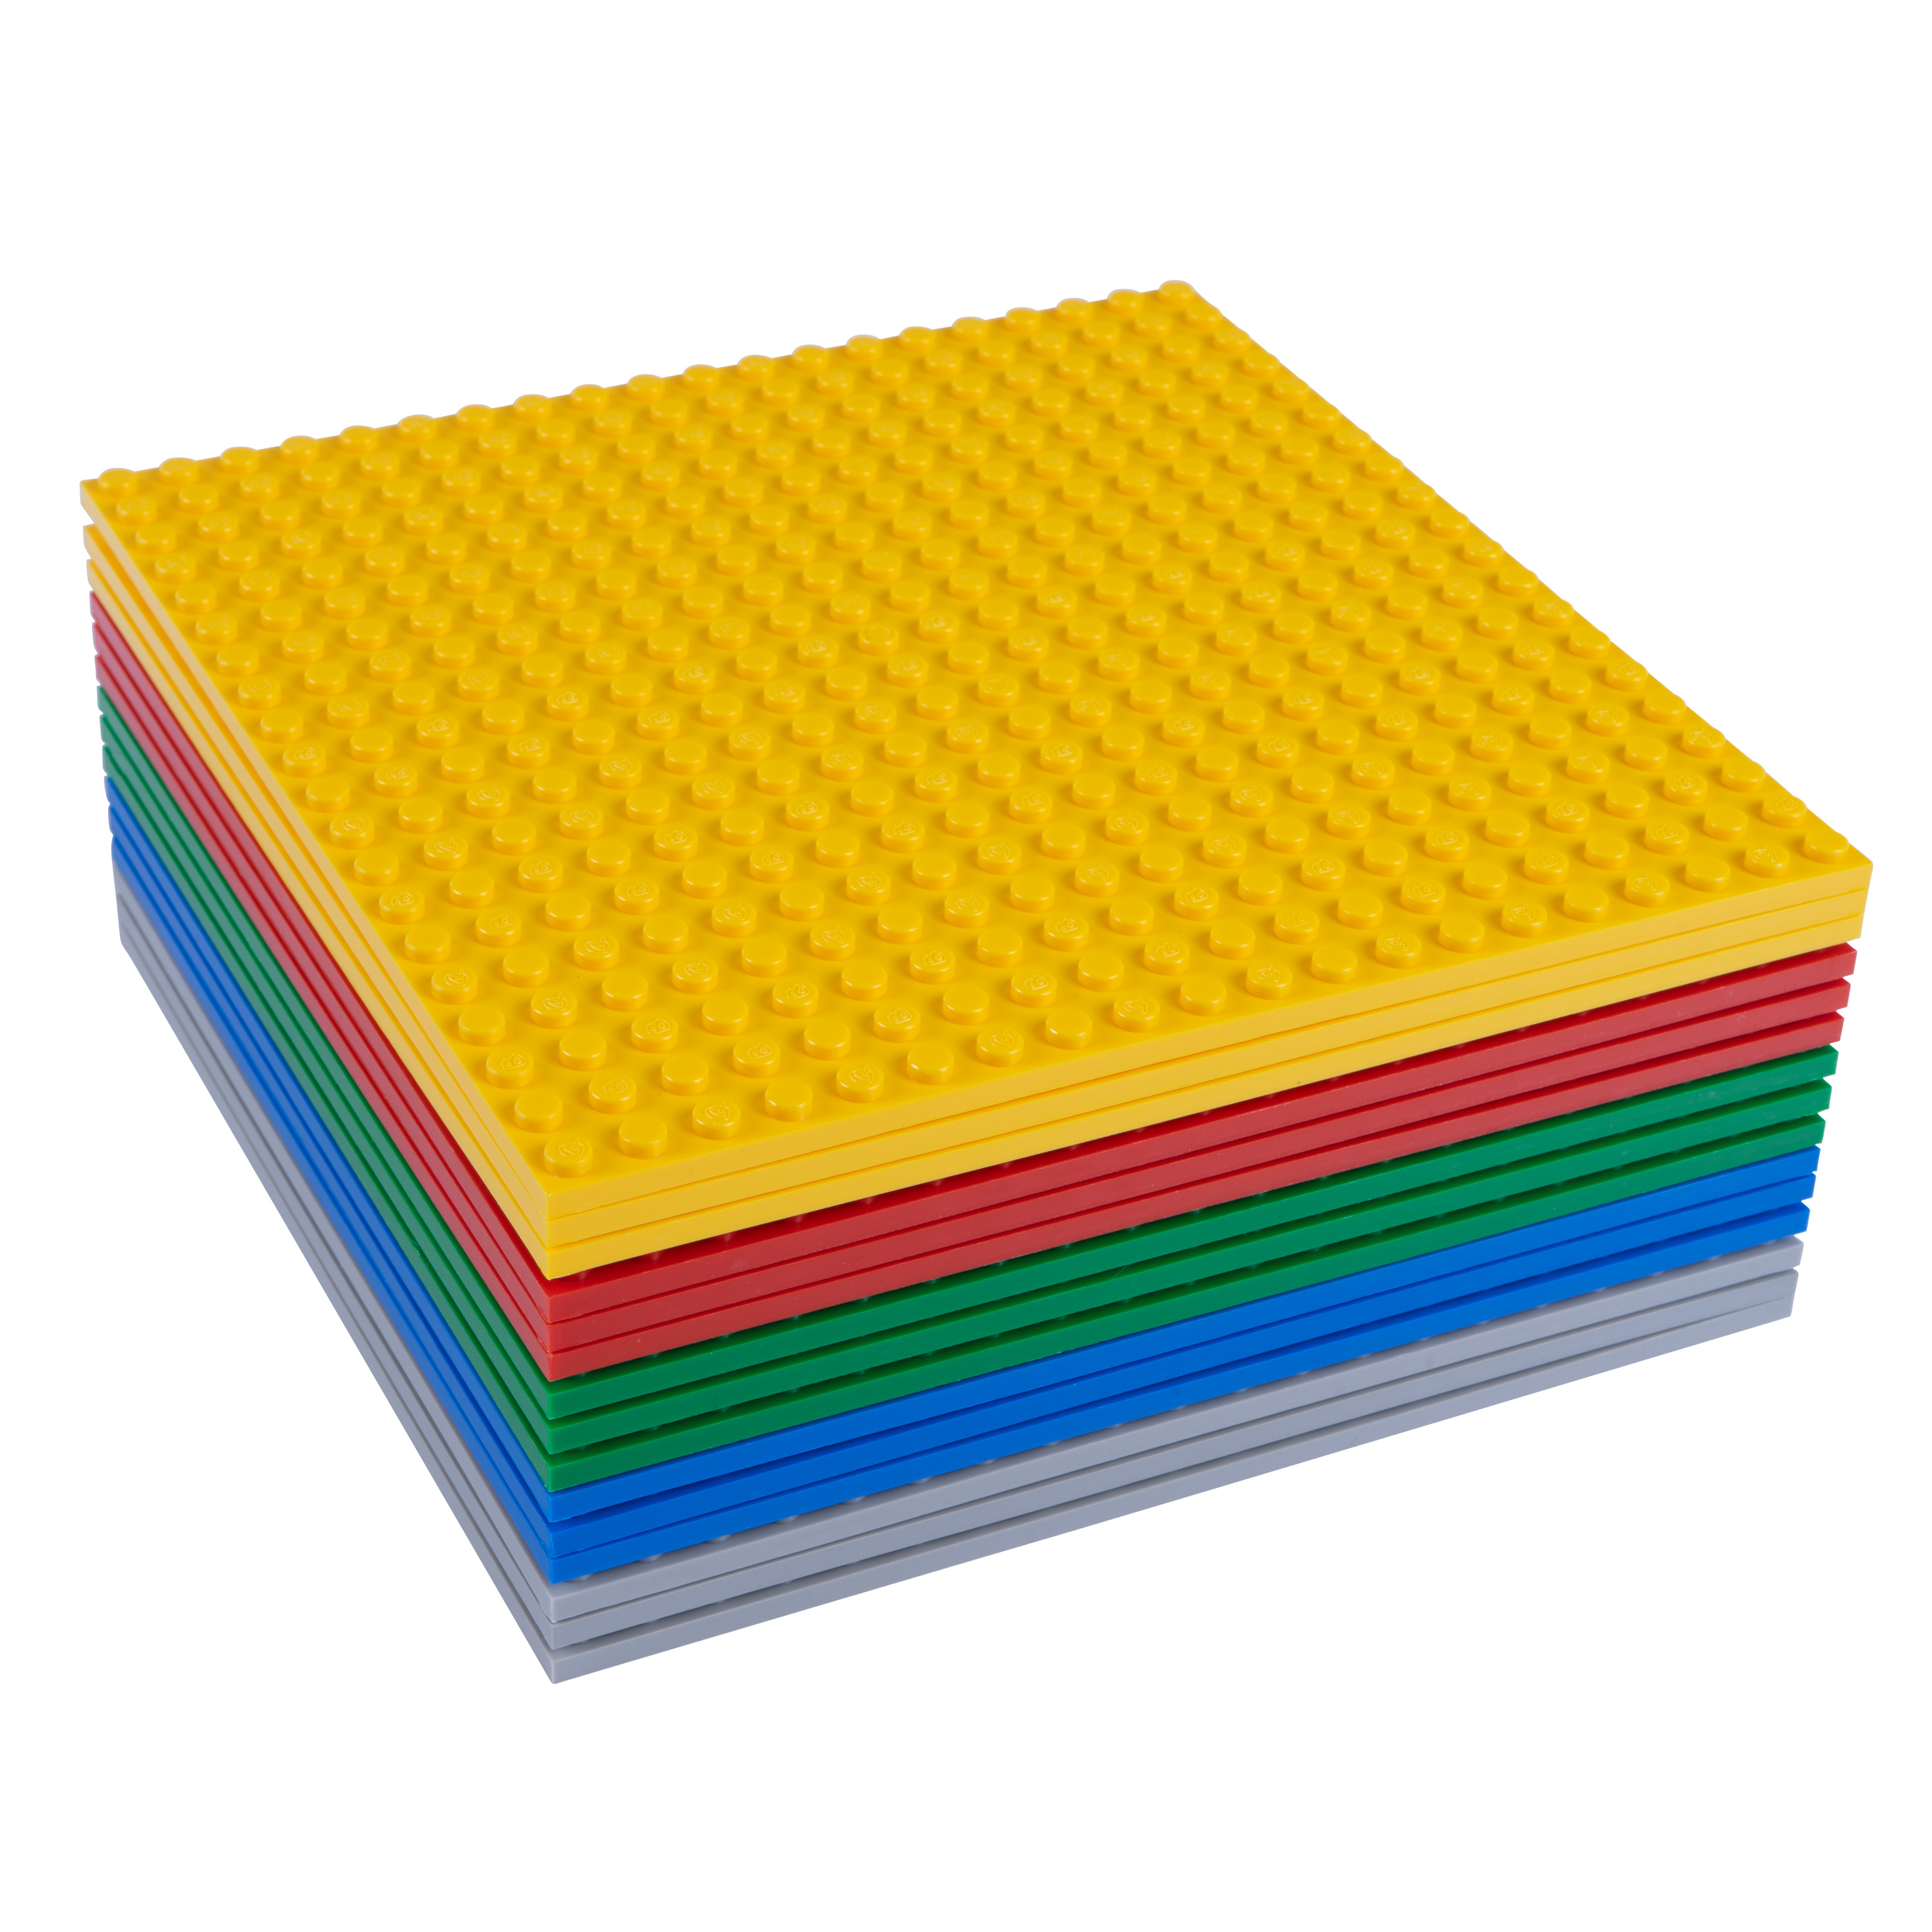 Q-Bricks 15er-Set Grundplatten mit 20 x 20 Noppen